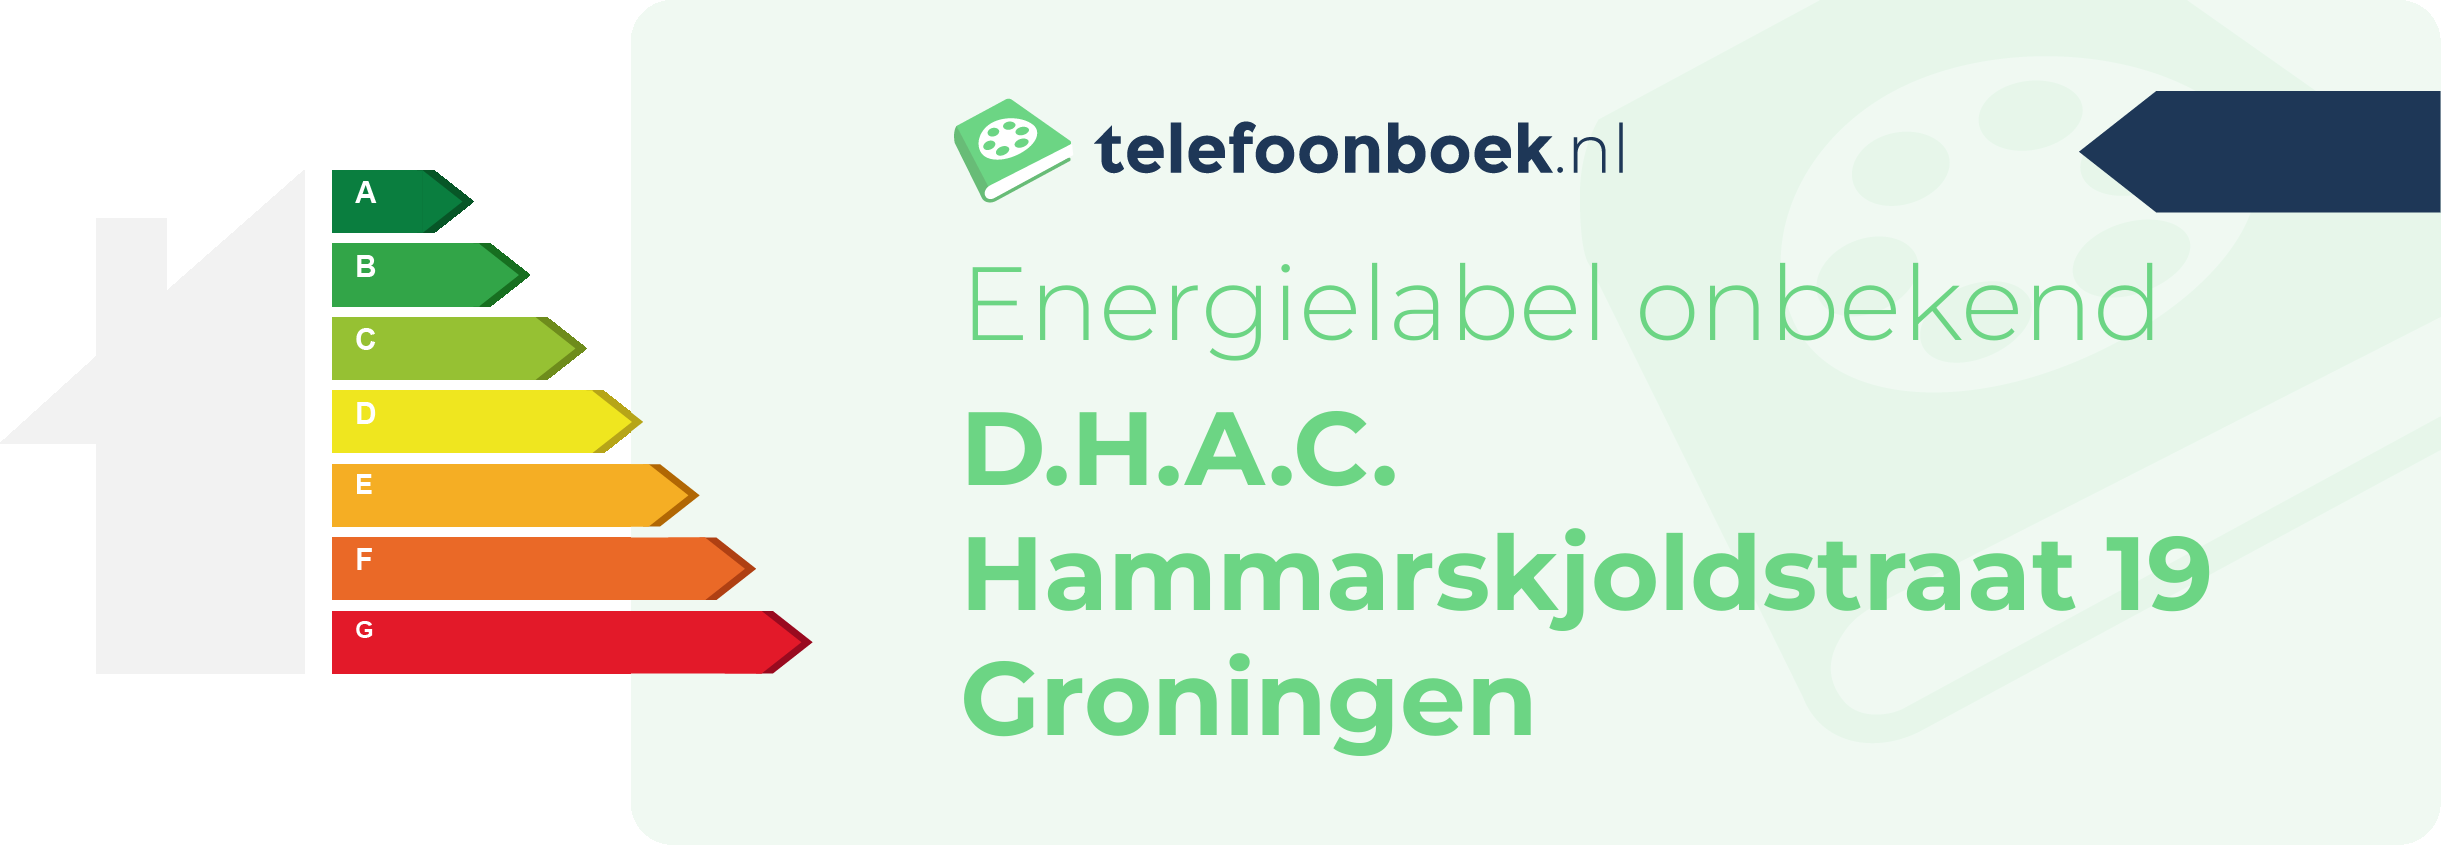 Energielabel D.H.A.C. Hammarskjoldstraat 19 Groningen